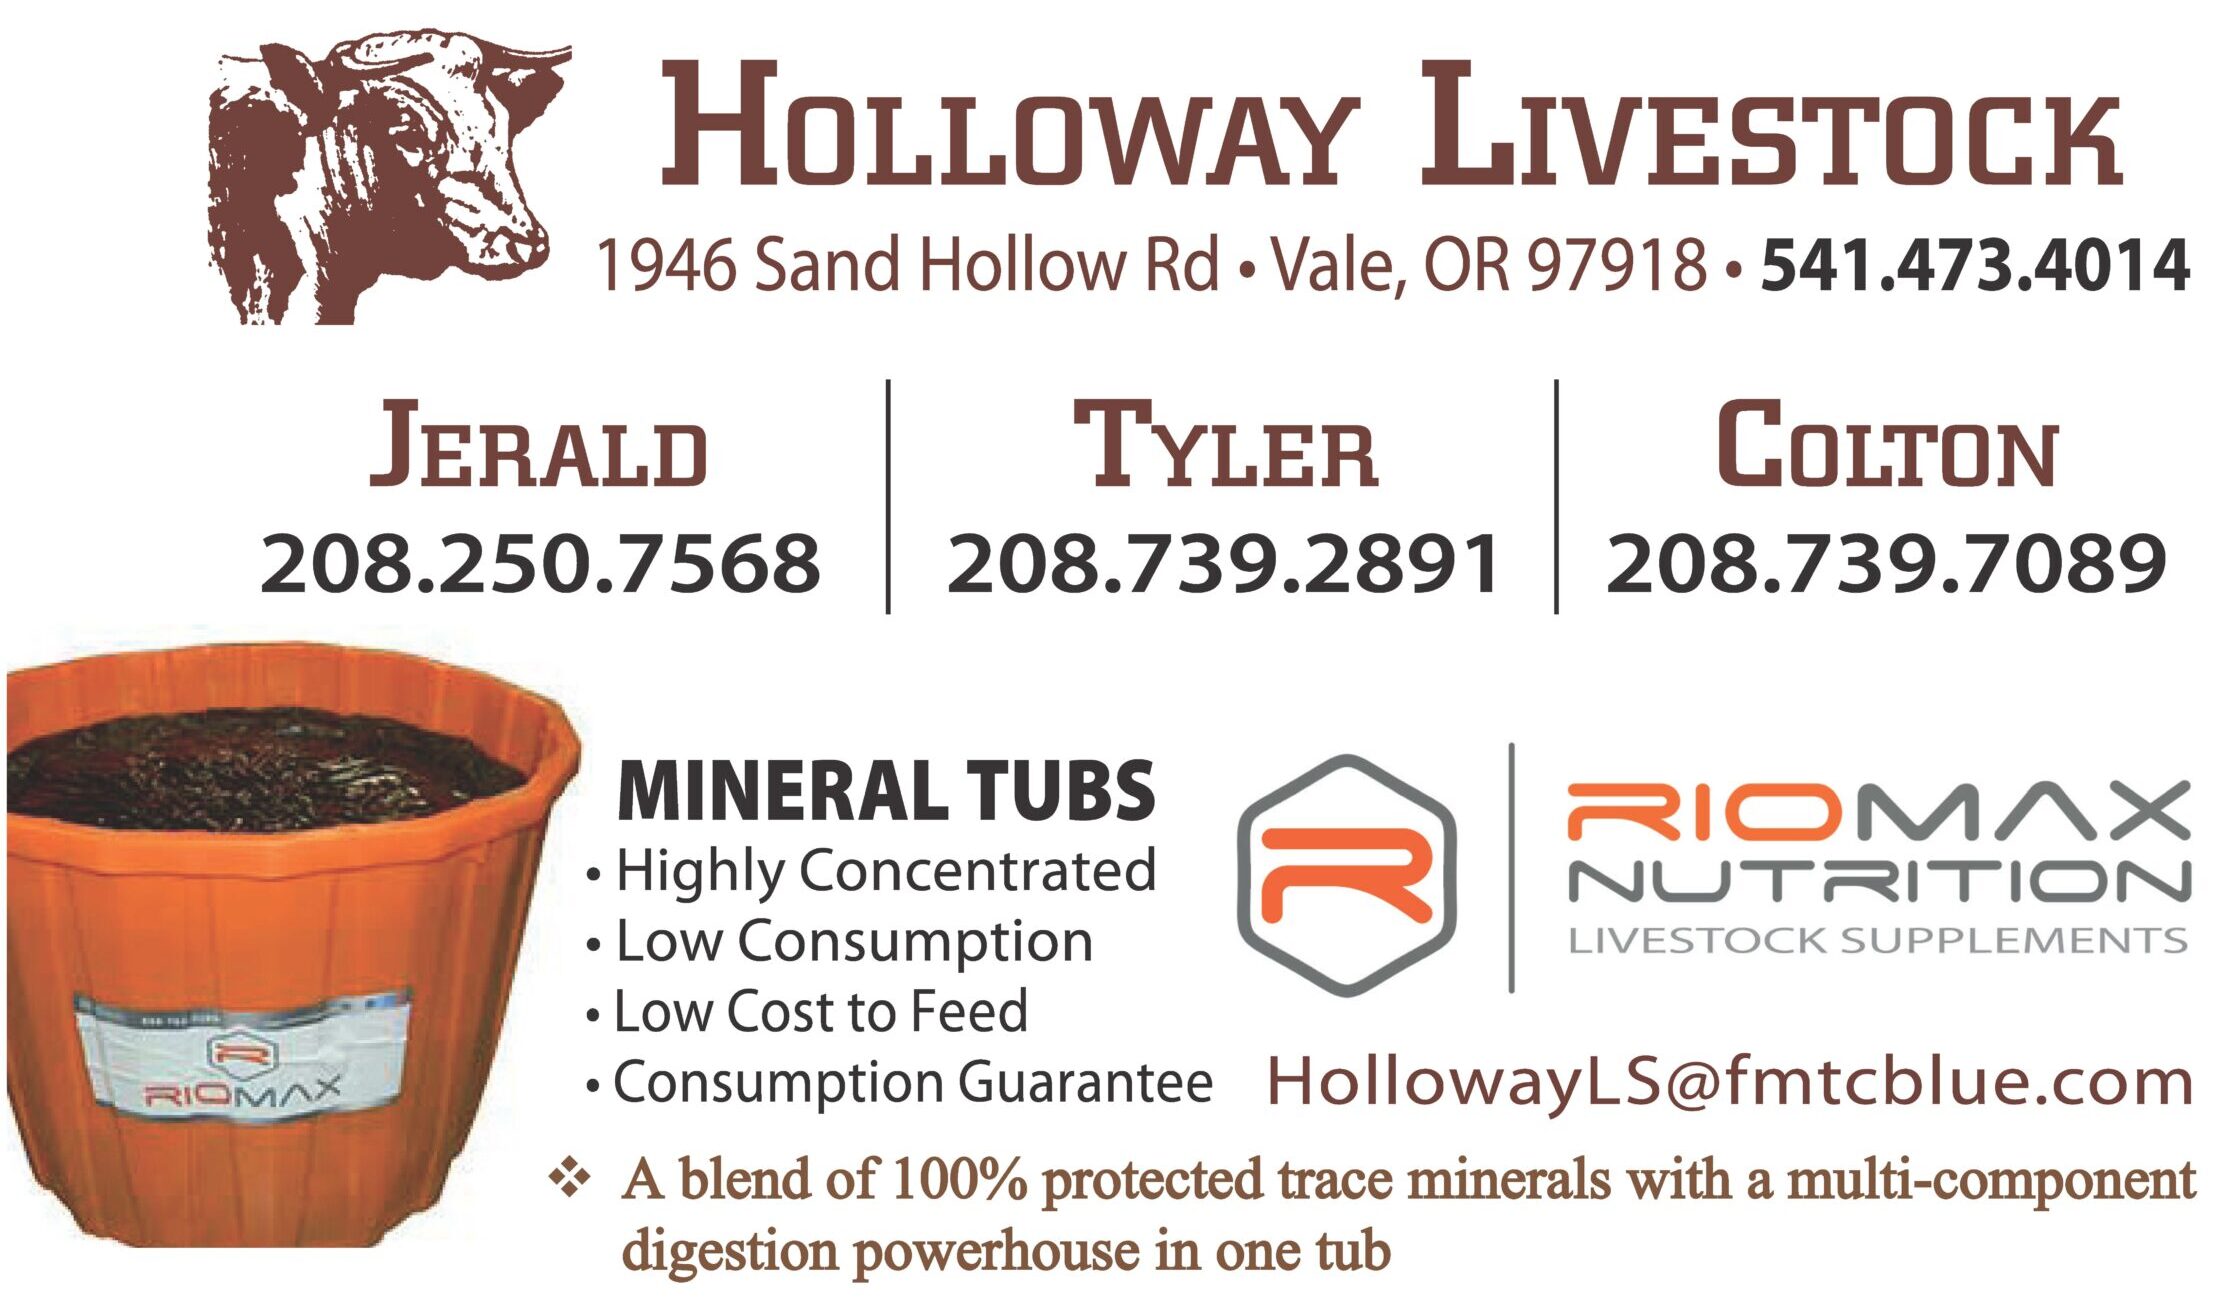 Holloway Livestock Busness cards